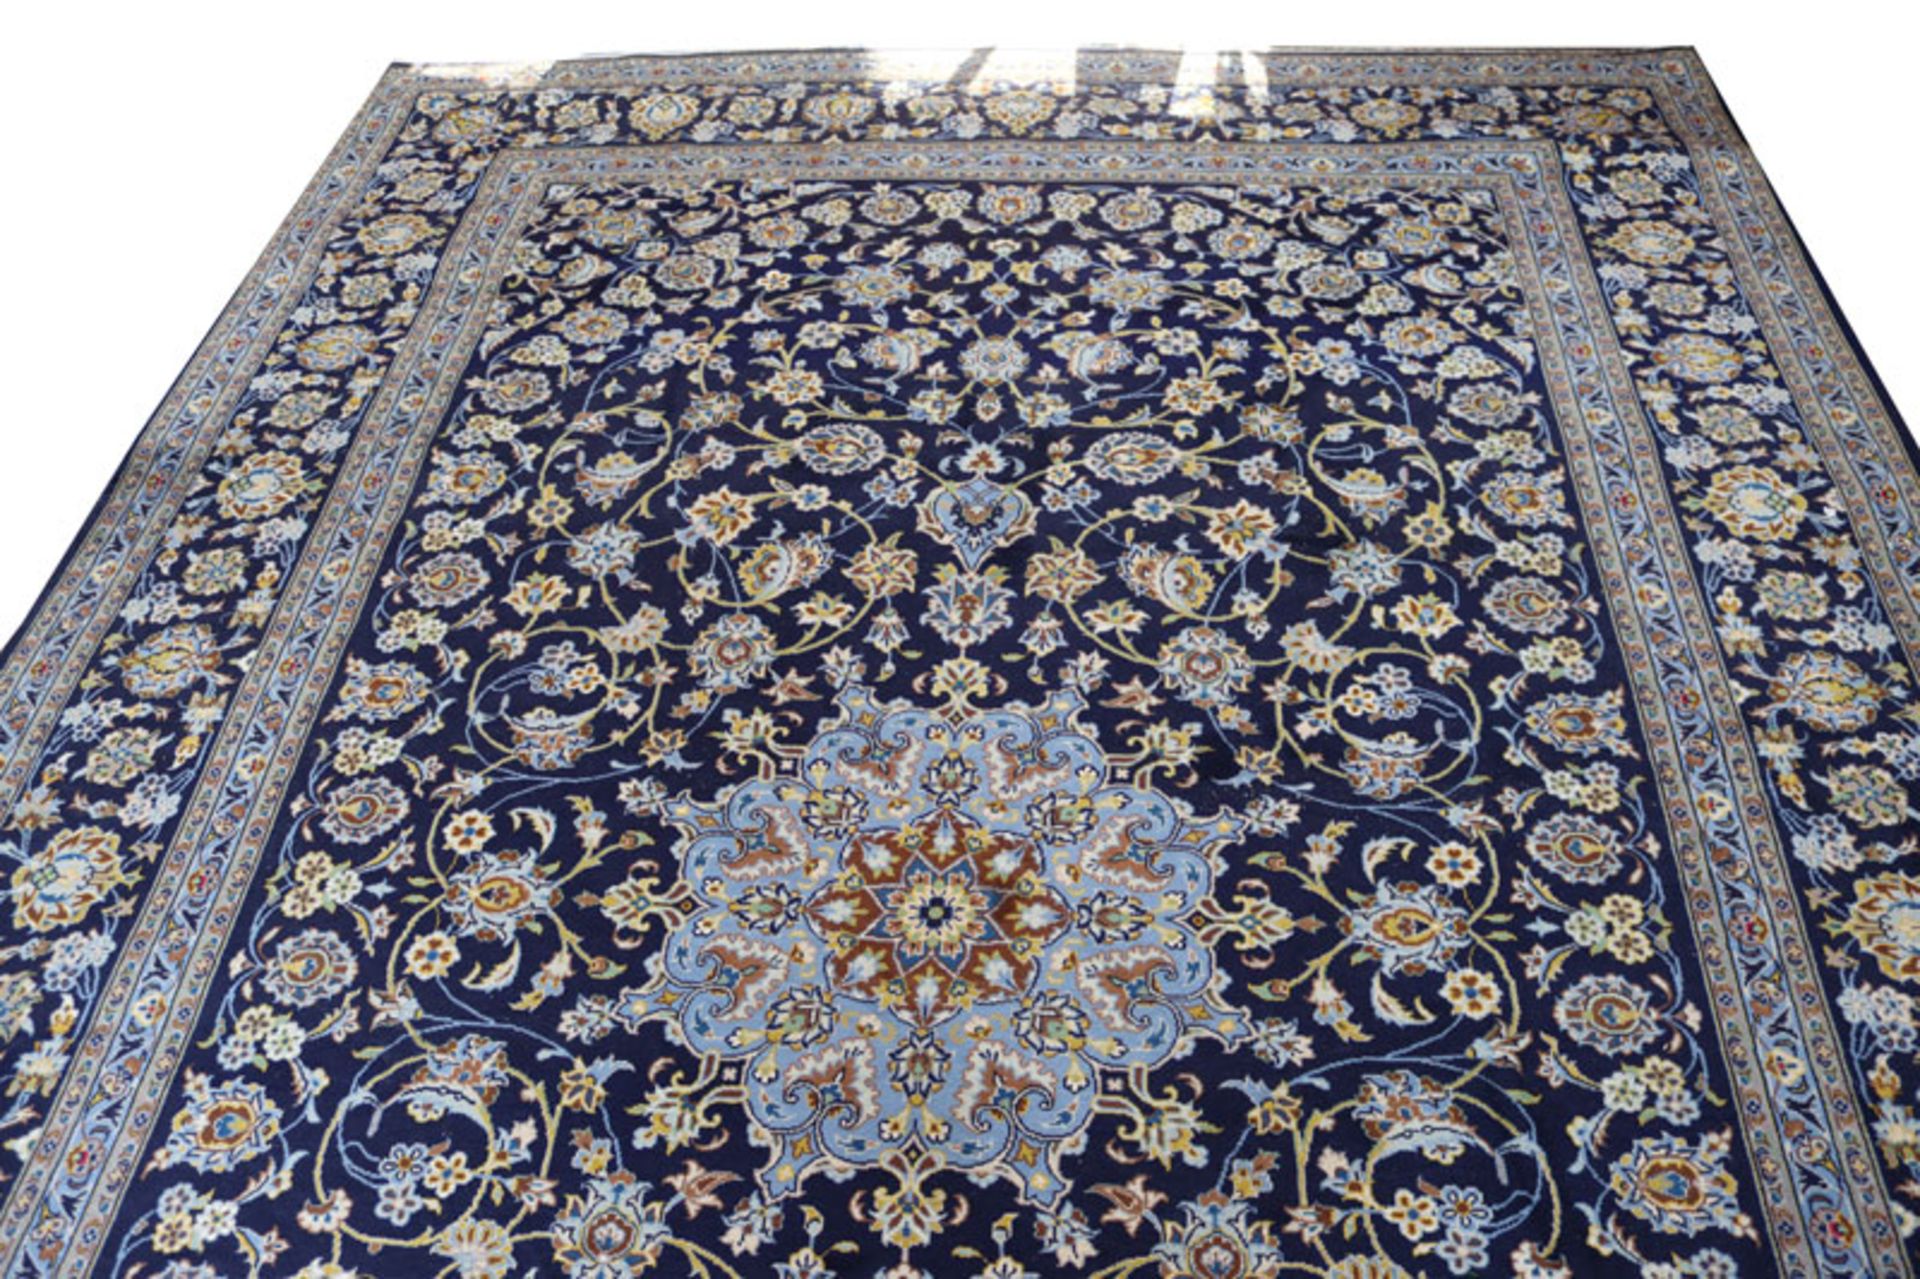 Teppich, dunkelblau/beige/braun, Gebrauchsspuren, 351 cm x 242 cm